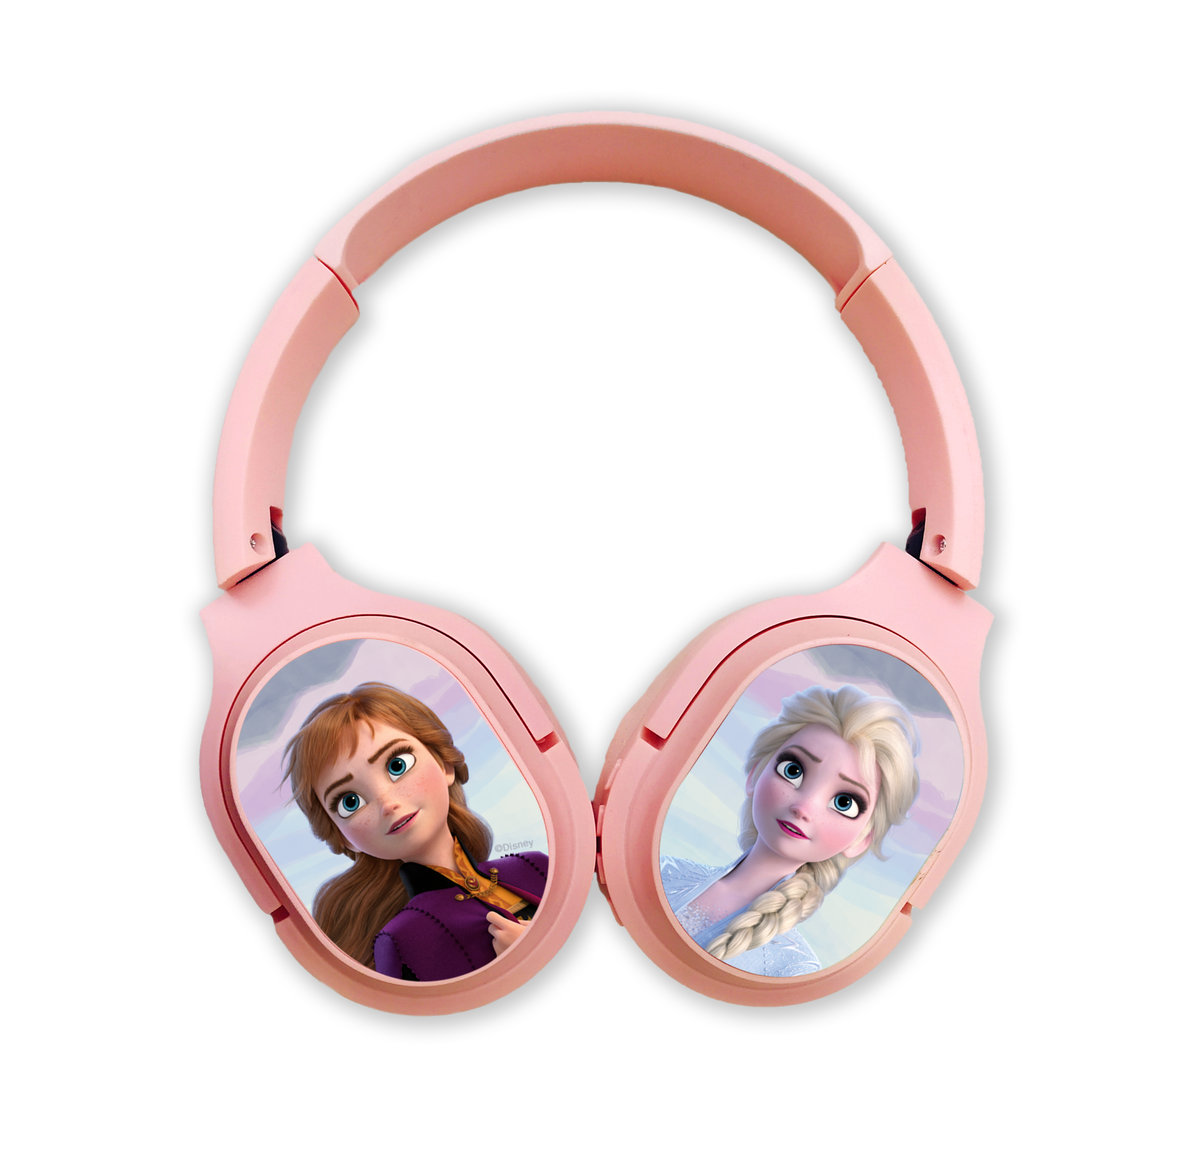 Фото - Навушники Disney Bezprzewodowe słuchawki stereo z mikrofonem, , Kraina Lodu 002, różo 